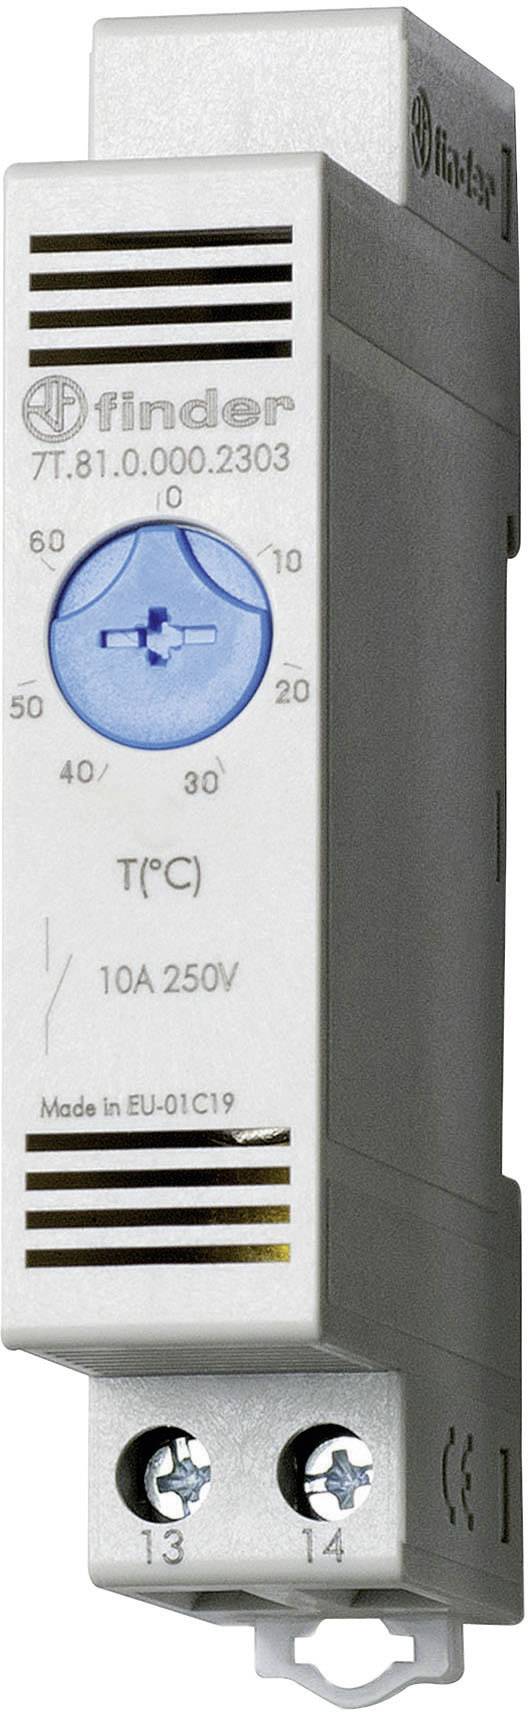 Termostato a Contatto Regolabile per Tubazioni 0/60°C Normalmente Aperto -  FINDER 7T8100002303 - Fazio SRL